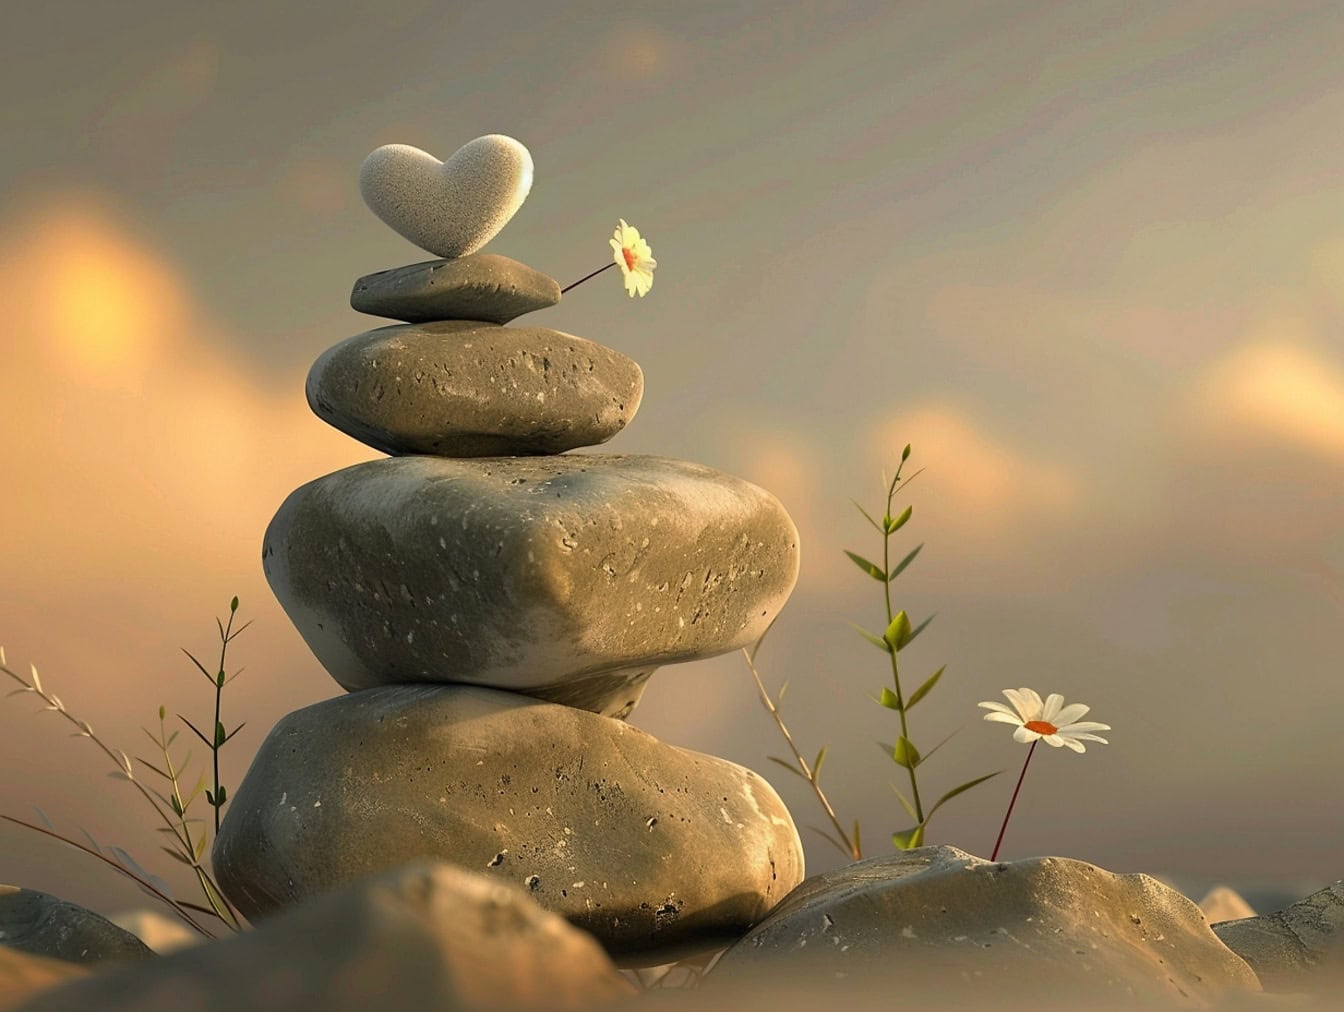 pilha de pedras com um coração no topo, uma ilustração de equilíbrio e harmonia no amor